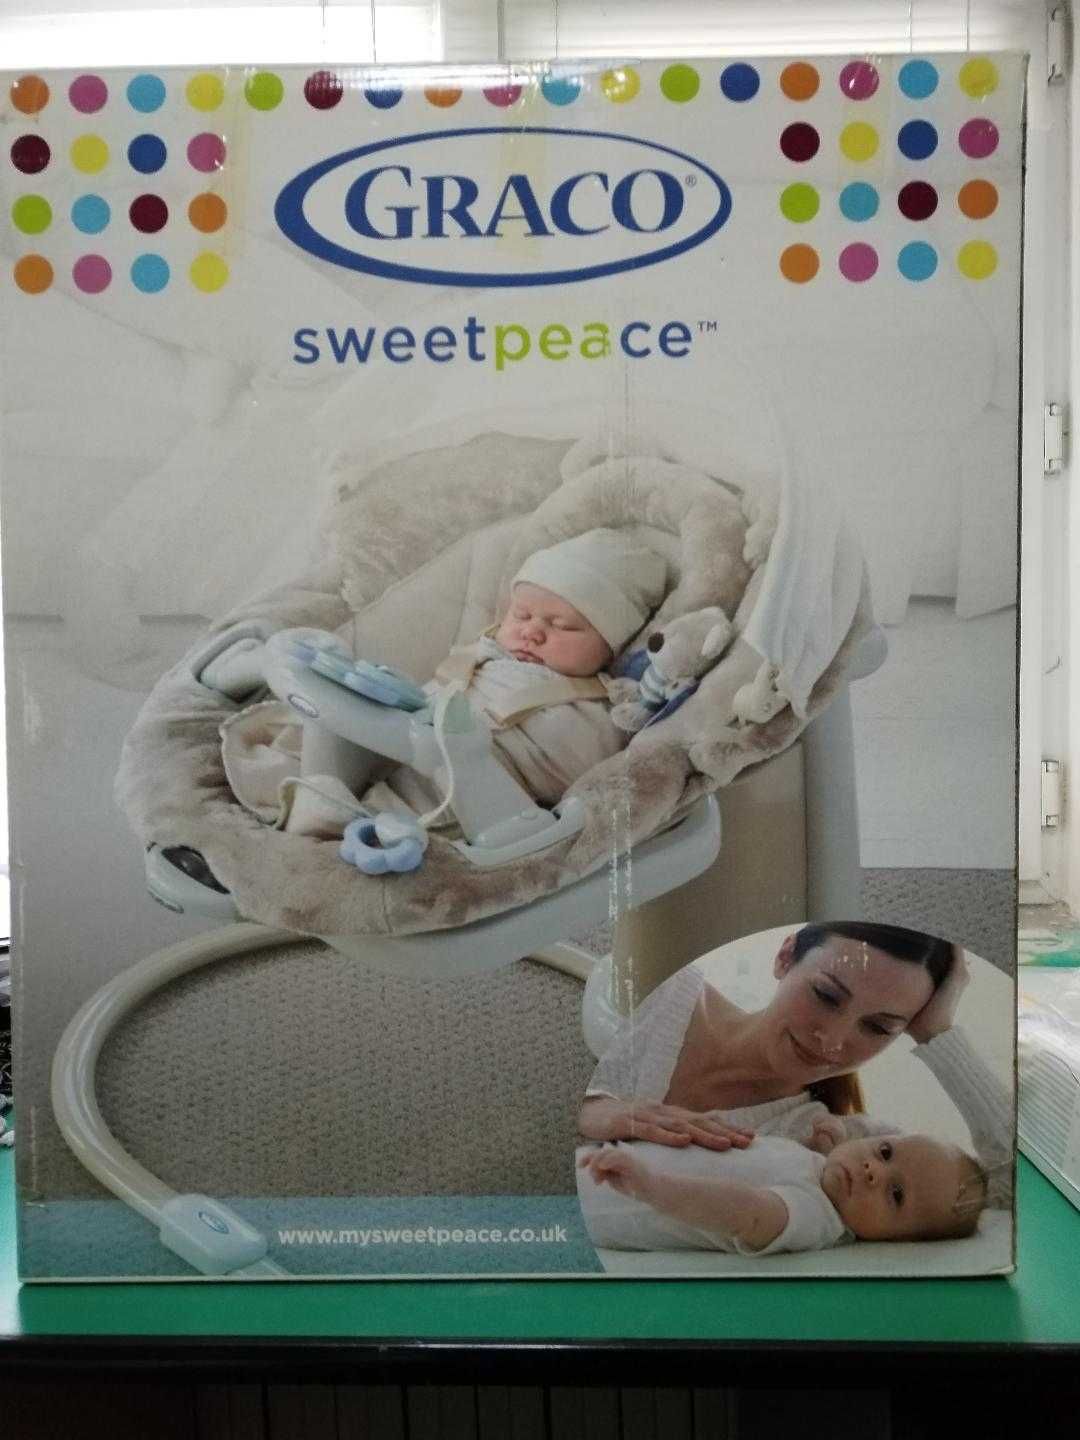 Balansoar GRACO sweetpeace